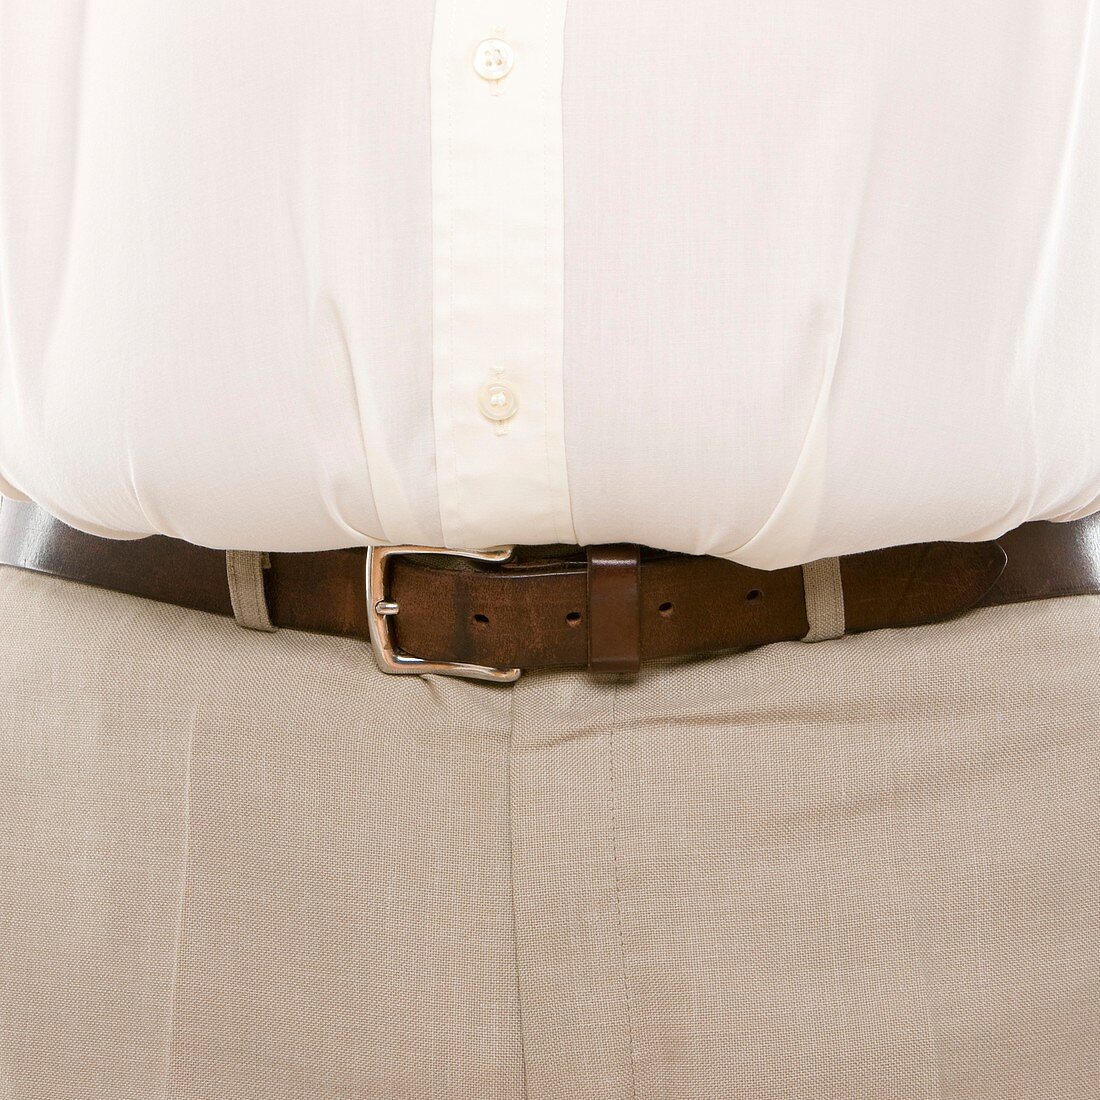 Overweight man's waist